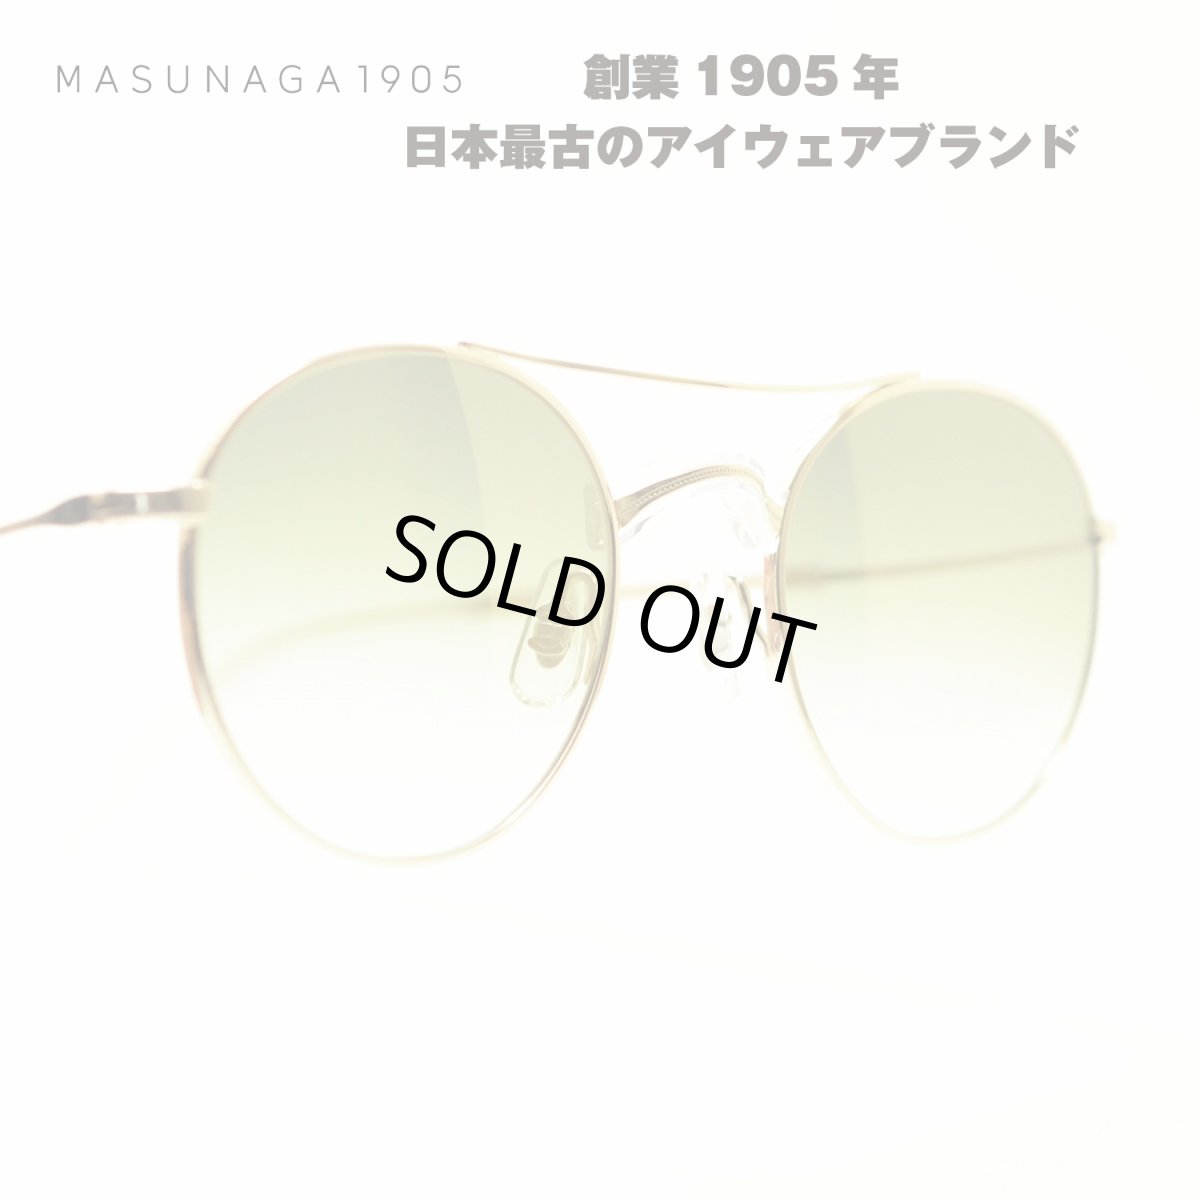 画像1: MASUNAGA GMS-106SG col-S42 GP/CRYSTAL メガネ 眼鏡 めがね メンズ レディース おしゃれ ブランド 人気 おすすめ フレーム 流行り 度付き レンズ サングラス (1)